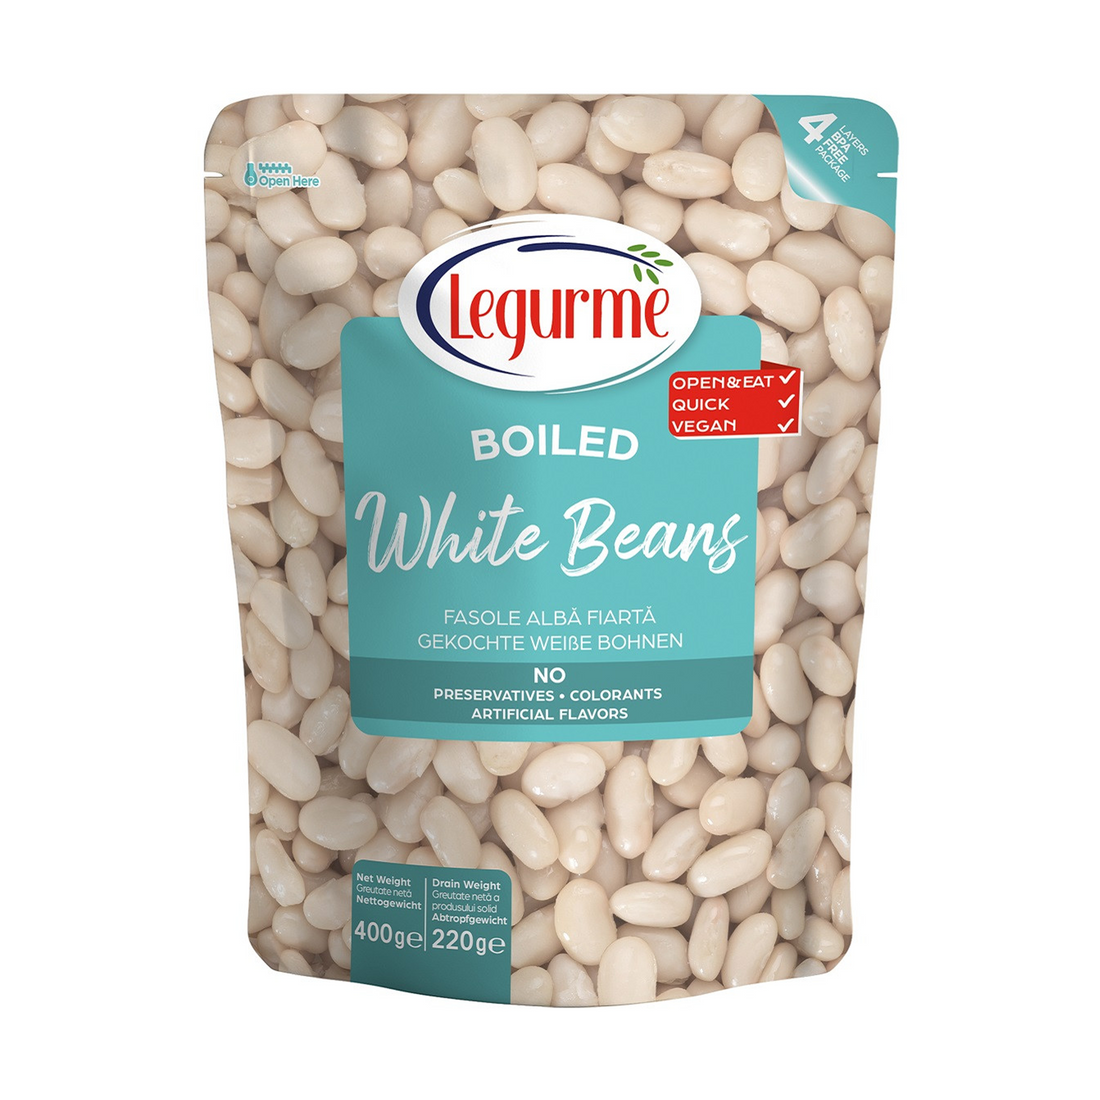 レグルメ 白いんげん豆の水煮 400g | Legurme Haşlanmış Fasulye | Boiled White Beans